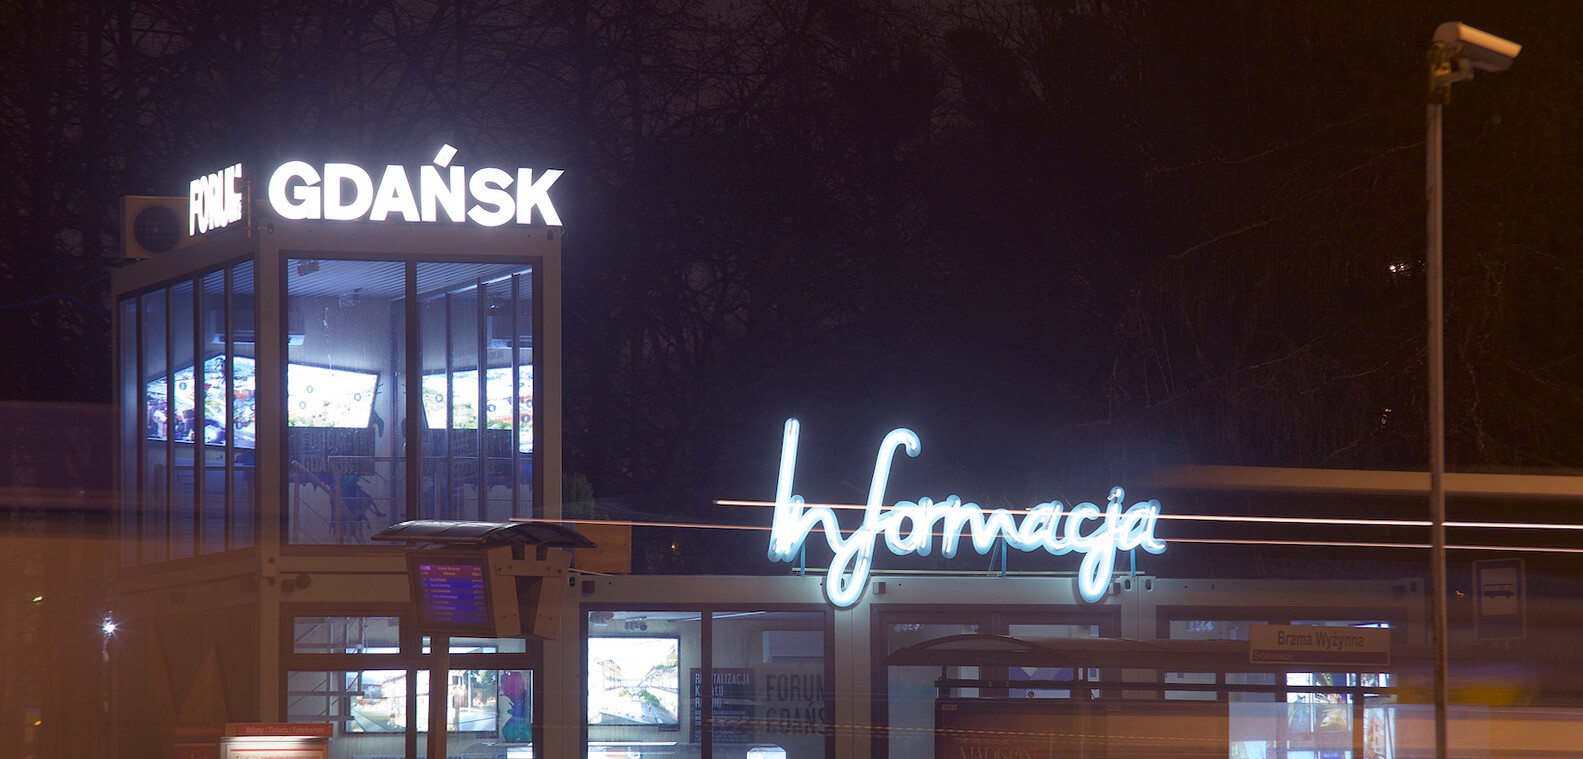 Informazioni sul forum di Danzica - Gdansk Forum - segnaletica informativa fatta di insegne al neon, montate su un telaio, poste sopra l'ingresso